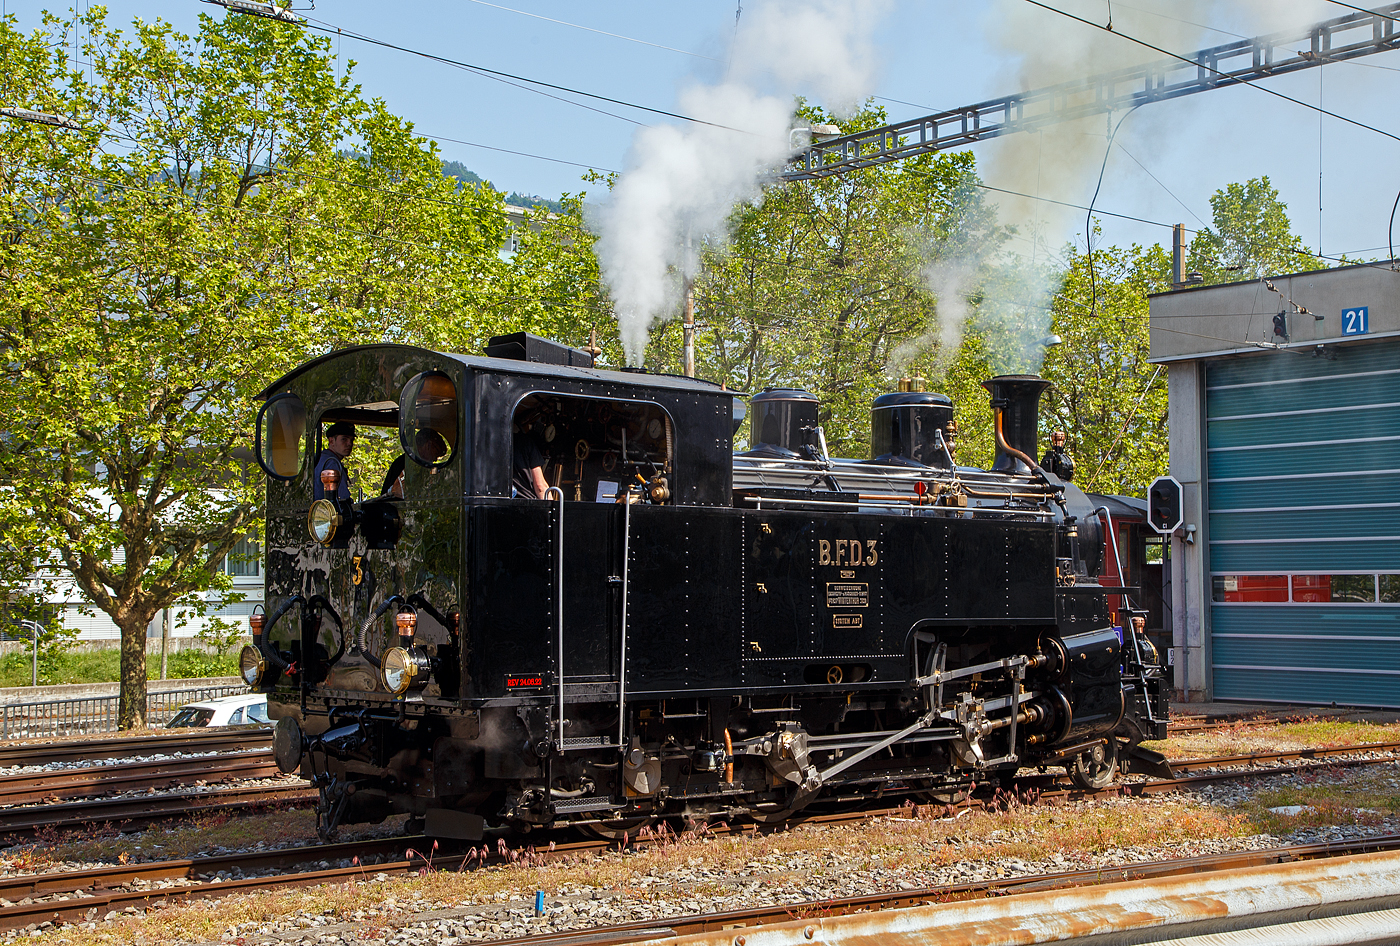 Es raucht und dampft in Vevey...
Die Dampflokomotive für gemischten Adhäsions- und Zahnradbetrieb BFD 3 HG 3/4 (Brig–Furka–Disentis-Bahn), später FO 3 (Furka-Oberalp-Bahn), heute im Bestand der Museumsbahn Blonay–Chamby, rangiert am 28.05.2023 in Vevey. Am Pfingstwochenende fand bei der das Schweizer Dampffestival 2023 / Festival suisse de la Vapeur 2023 statt.

Die Lok Nr. 3 wurde 1969 der Museumsbahn Blonay–Chamby (BC) geschenkt, während Nr. 4 als Reserve weiterhin bei der Furka-Oberalp-Bahn (FO) blieb und hauptsächlich für Nostalgiefahrten verwendet wurde. Mit Ablauf der Untersuchungsfristen wurde sie (FO 4) 1972 abgestellt. Nach einigen Stationen ging die Lok 4 im Jahr 1997 zunächst leihweise an die Dampfbahn Furka-Bergstrecke über. Anschließend wurde sie in der DFB-Werkstätte betriebsfähig aufgearbeitet und 2006 in Betrieb genommen. Die Lok wurde historisch korrekt restauriert und vollständig schwarz lackiert. Anlässlich der Eröffnung des Streckenabschnitts Gletsch–Oberwald im Jahr 2010 ging die Lok als Geschenk an die DFB über.

Auch die ehemaligen FO Loks 1 und 9, sowie Überresten der Loks 2 und 8, sind heute bei der Dampfbahn-Furka-Bergstrecke. Unter der Bezeichnung „Back to Switzerland“ kehrten die vier HG 3/4 aus Vietnam 1990 Jahre in die Schweiz zurück.

Die HG 3/4 Dampflokomotiven haben vier Zylinder, zwei außenliegende für den Adhäsionsantrieb und zwei innenliegende für den Zahnradantrieb. 

TECHNISCHE DATEN:
Länge über Puffer: 8.754 mm
Dienstgewicht: 42 t
Triebraddurchmesser: 910 mm
Laufraddurchmesser: 600 mm
Zahnrad Teilkreis: 688 mm
Zahnrad Zähne/Teilung: 18 Zähne / 120 mm (Abt 2-lamellig)
Anhängelast 110 ‰ Steigung: 60 t
Max. Geschwindigkeit Adhäsion: 45 km /h
Max. Geschwindigkeit Zahnrad: 20 km/h
Leistung: 600 PS (440 kW)
Antriebssystem: Getrennte Adhäsions- & Zahnradmaschine nach System Abt als Heissdampf Vierzylinderverbundmaschine
Bremsen: Vakuumbremse, Riggenbach'sche Gegendruckbremse
Steuerung Adhäsion: Walscherts Kolbenschieber
Steuerung Zahnrad: Joy Kolbenschieber
Zylinderdurchmesser Adhäsion: 420 mm
Zylinderdurchmesser Zahnrad: 560 mm
Kesseldruck: 14 bar
Rostfläche / Heizfläche:1,3 m² / 63 m²
Siede- / Rauchrohre: 95 / 15 Rohre
Kesselwasser-Inhalt: 2,6 m³
Wasservorrat: 3,15 m³
Kohlenvorrat: ca. 1,3 t
